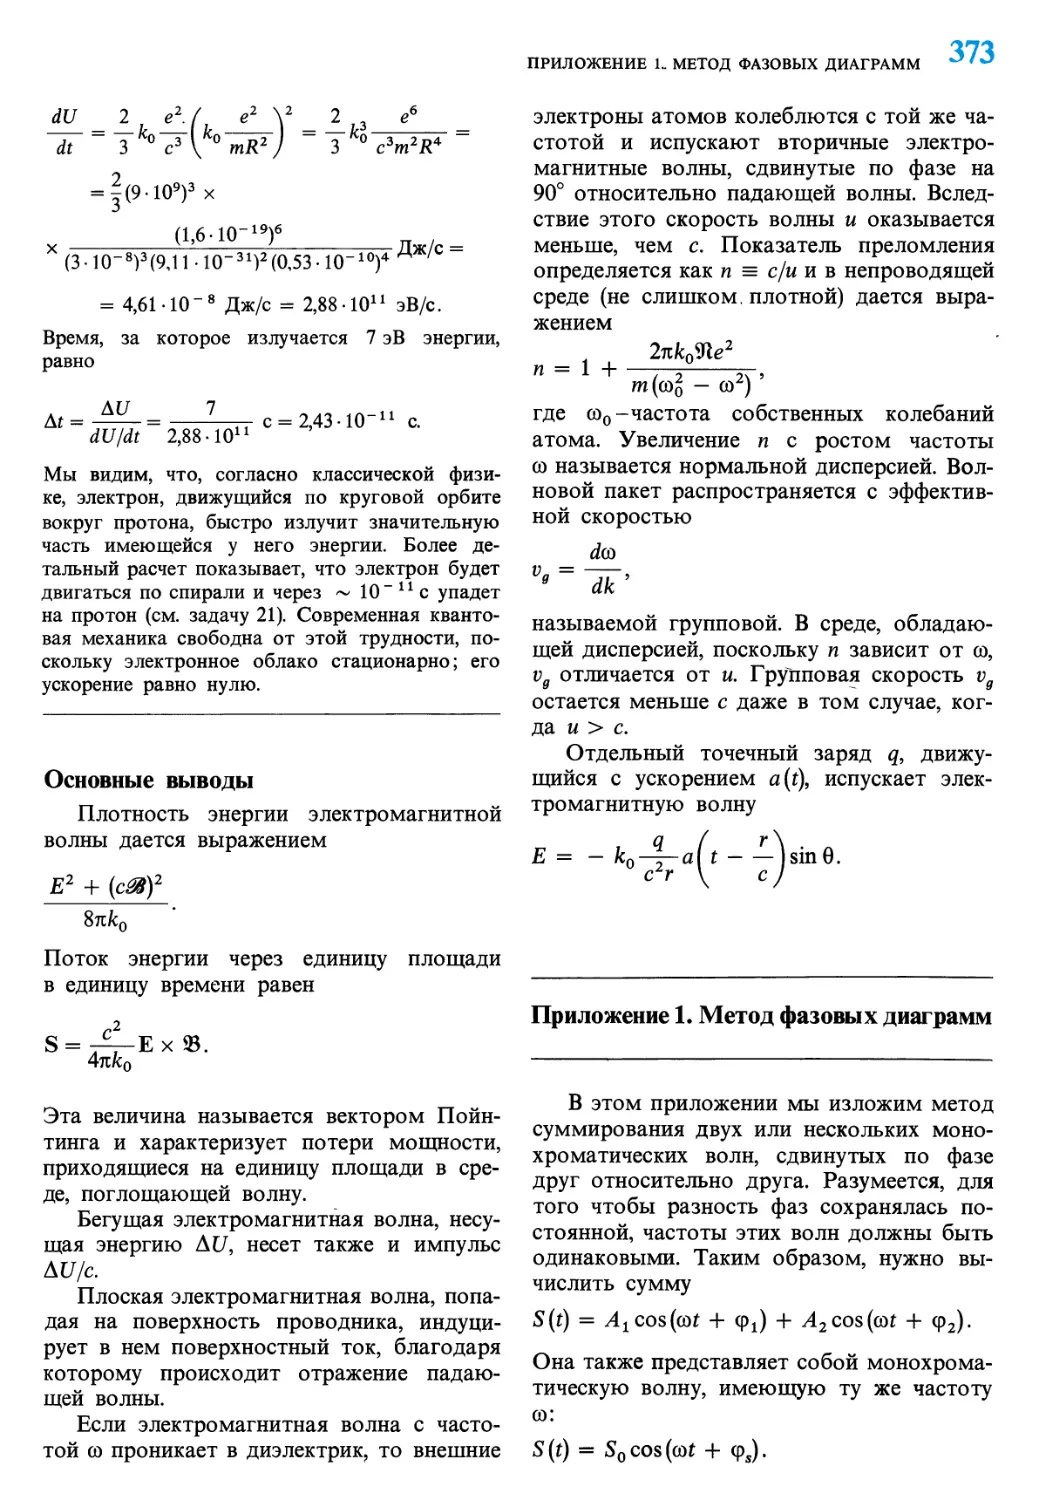 Приложение 1. Метод фазовых диаграмм